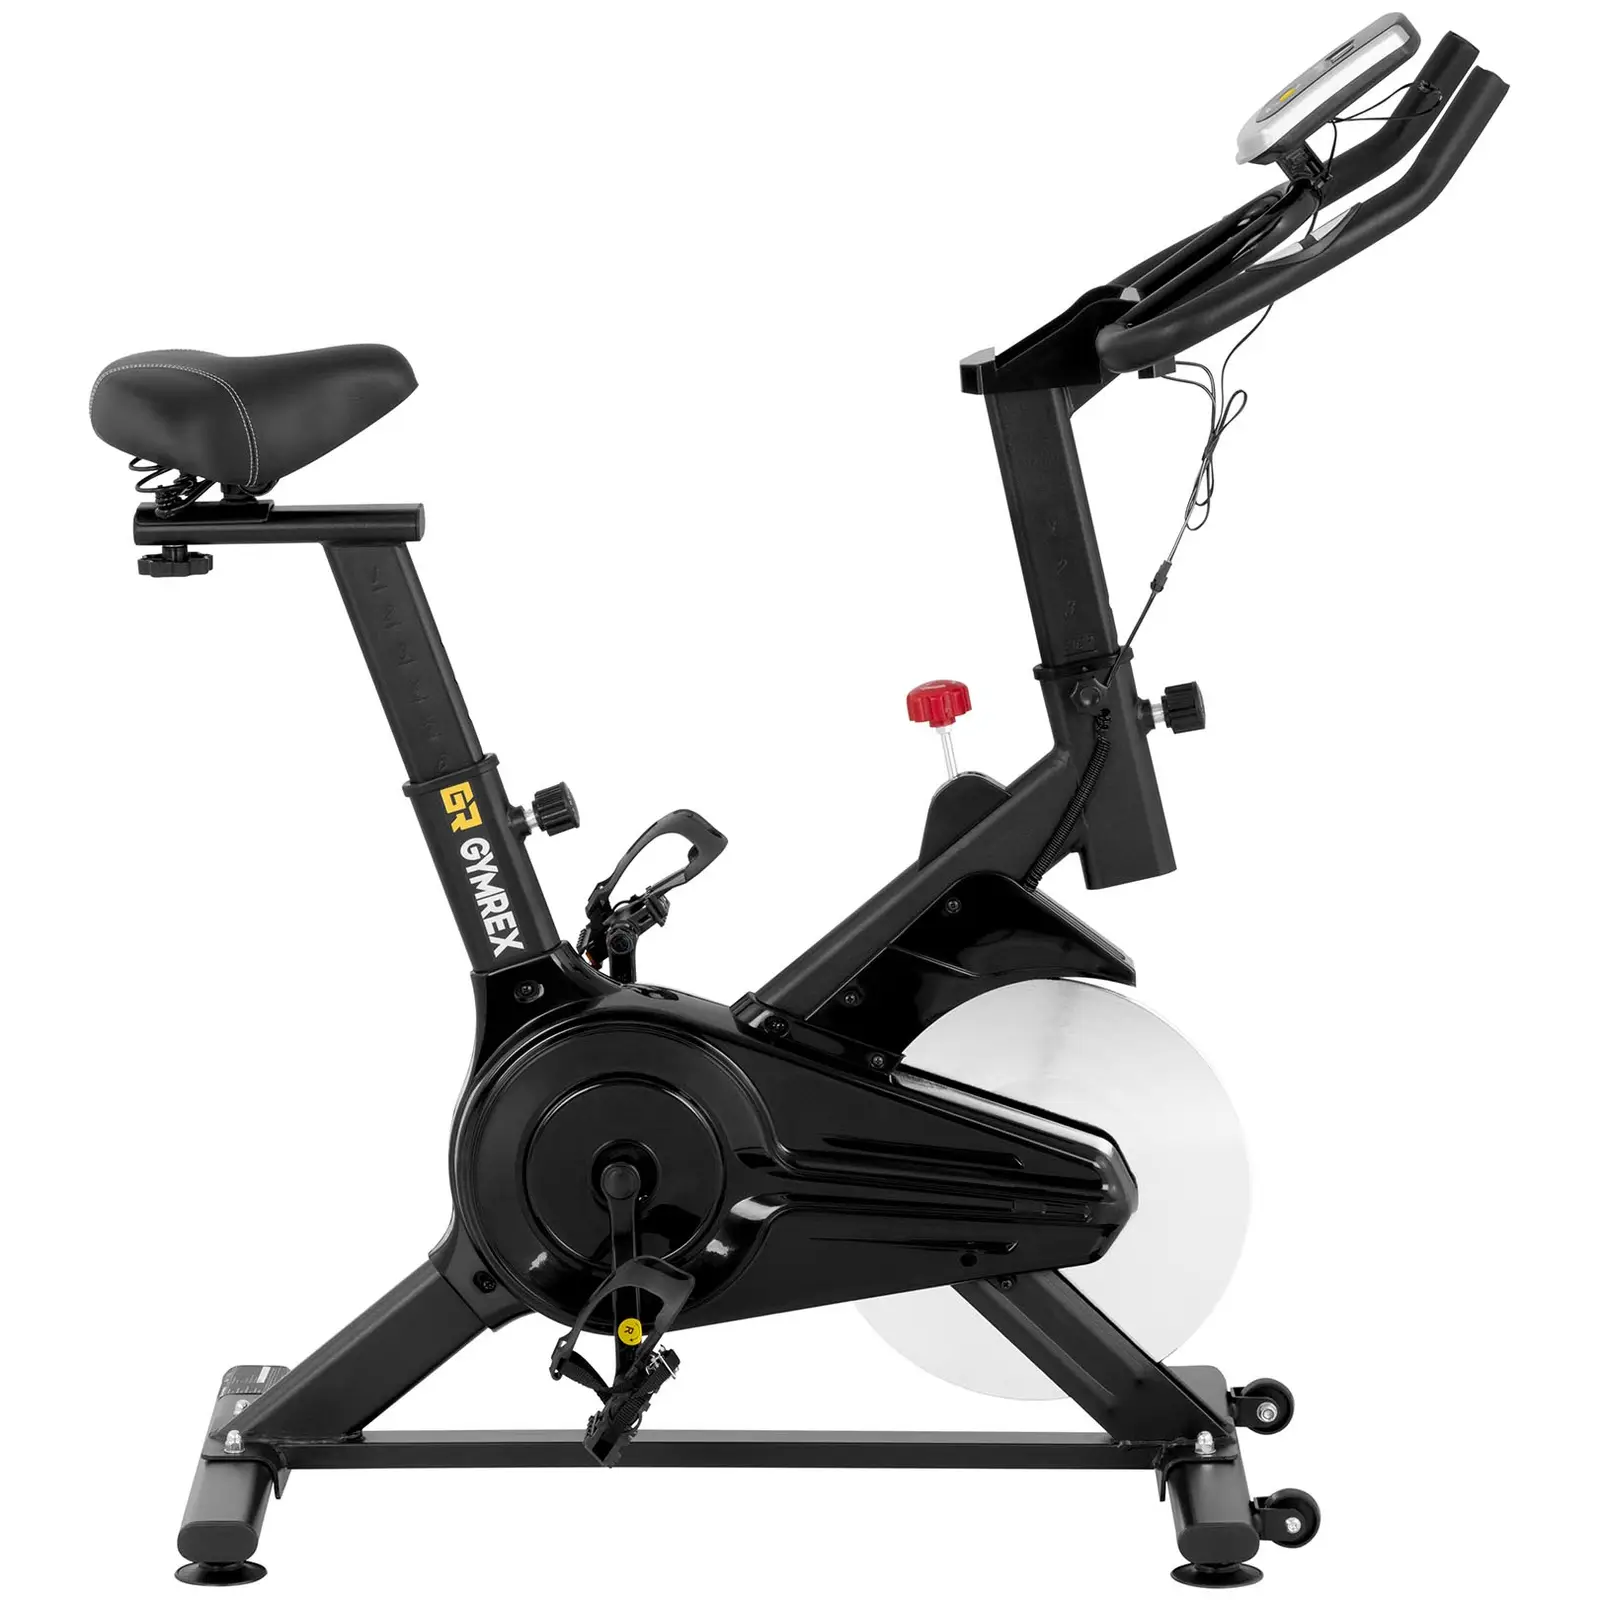 Motionscykel - Svänghjul 6 kg - Upp till 100 kg - LCD